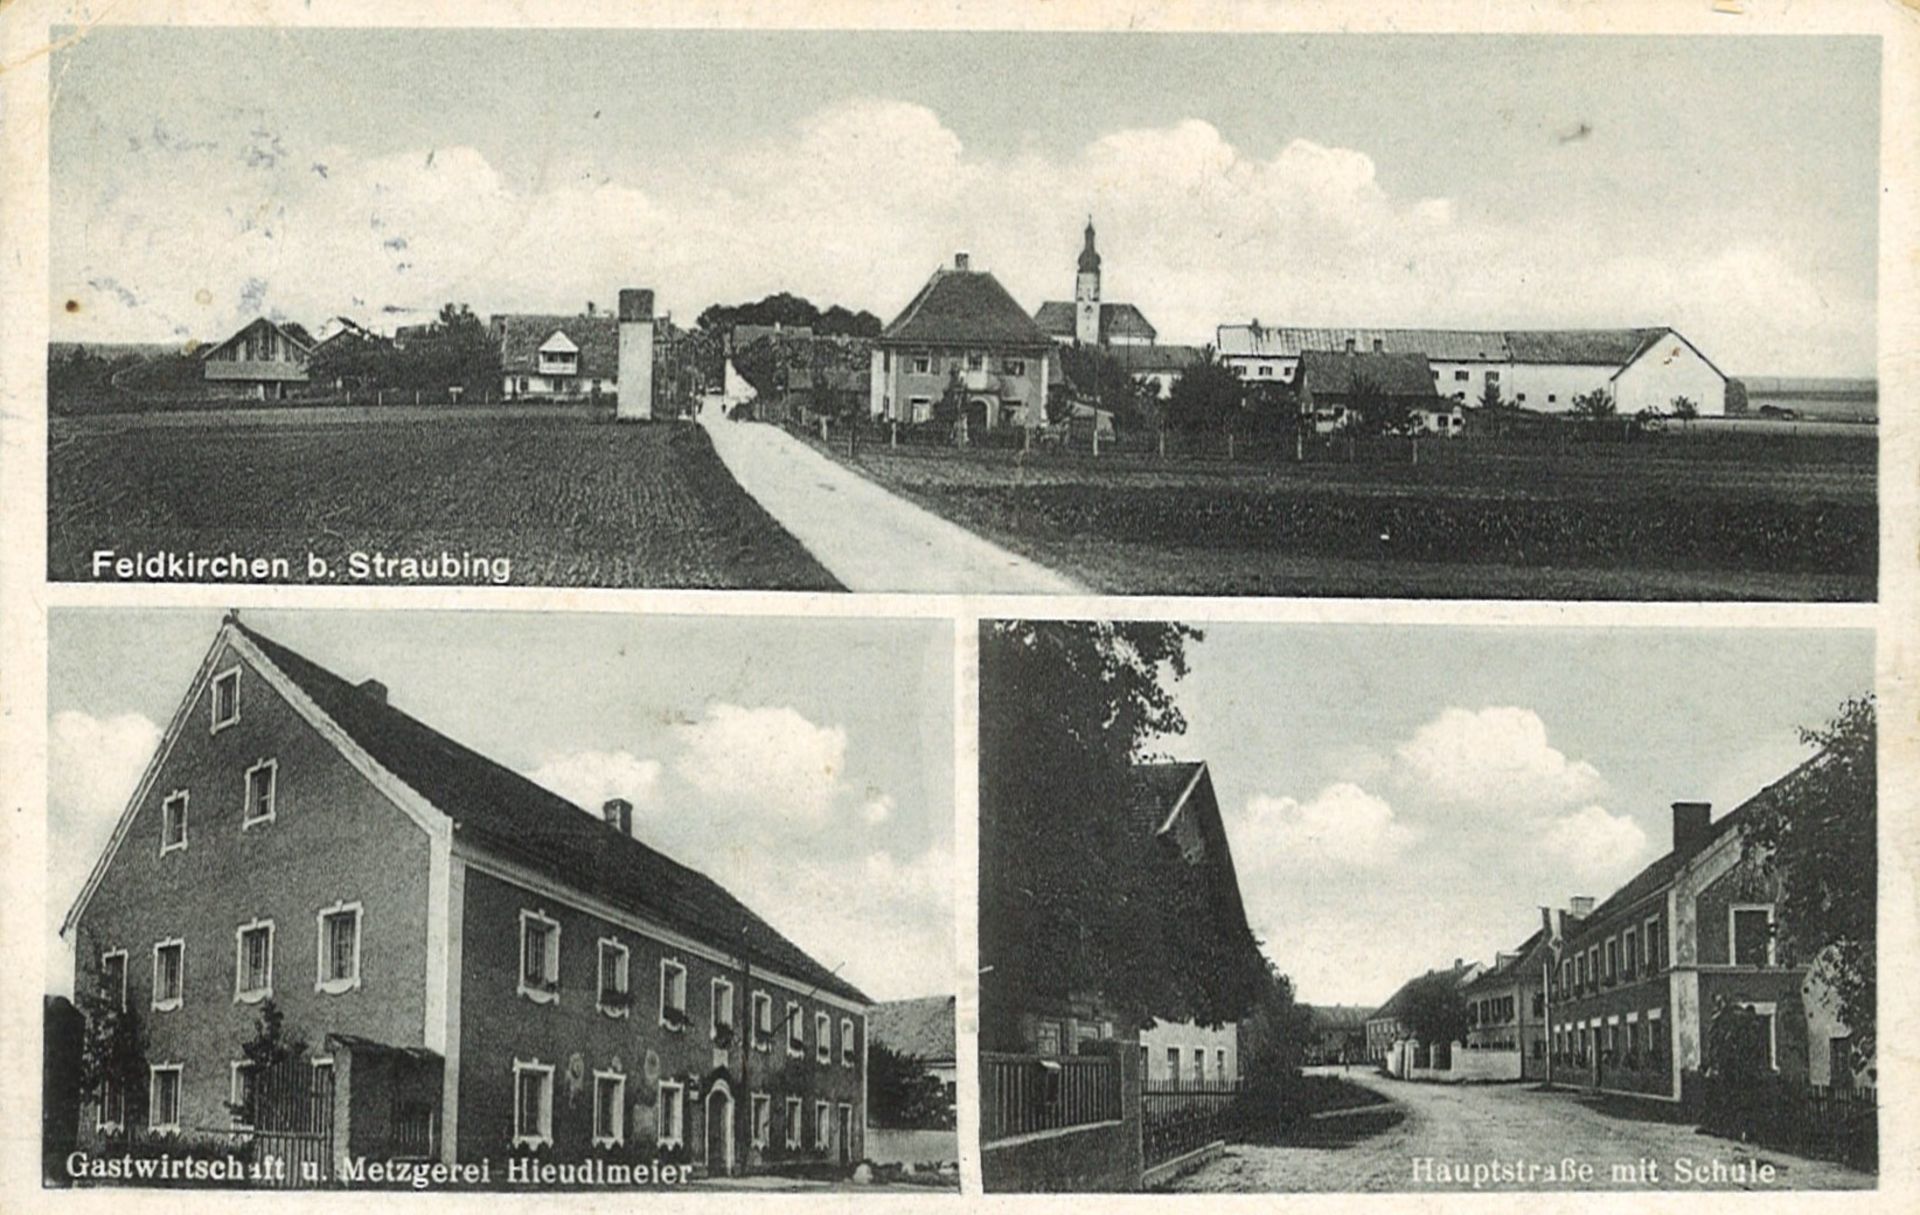 Postkarte mit Ansicht auf die Feldkirche b. Staubing, Gastwirtschaft und Metzgerei Hieudlmeier und